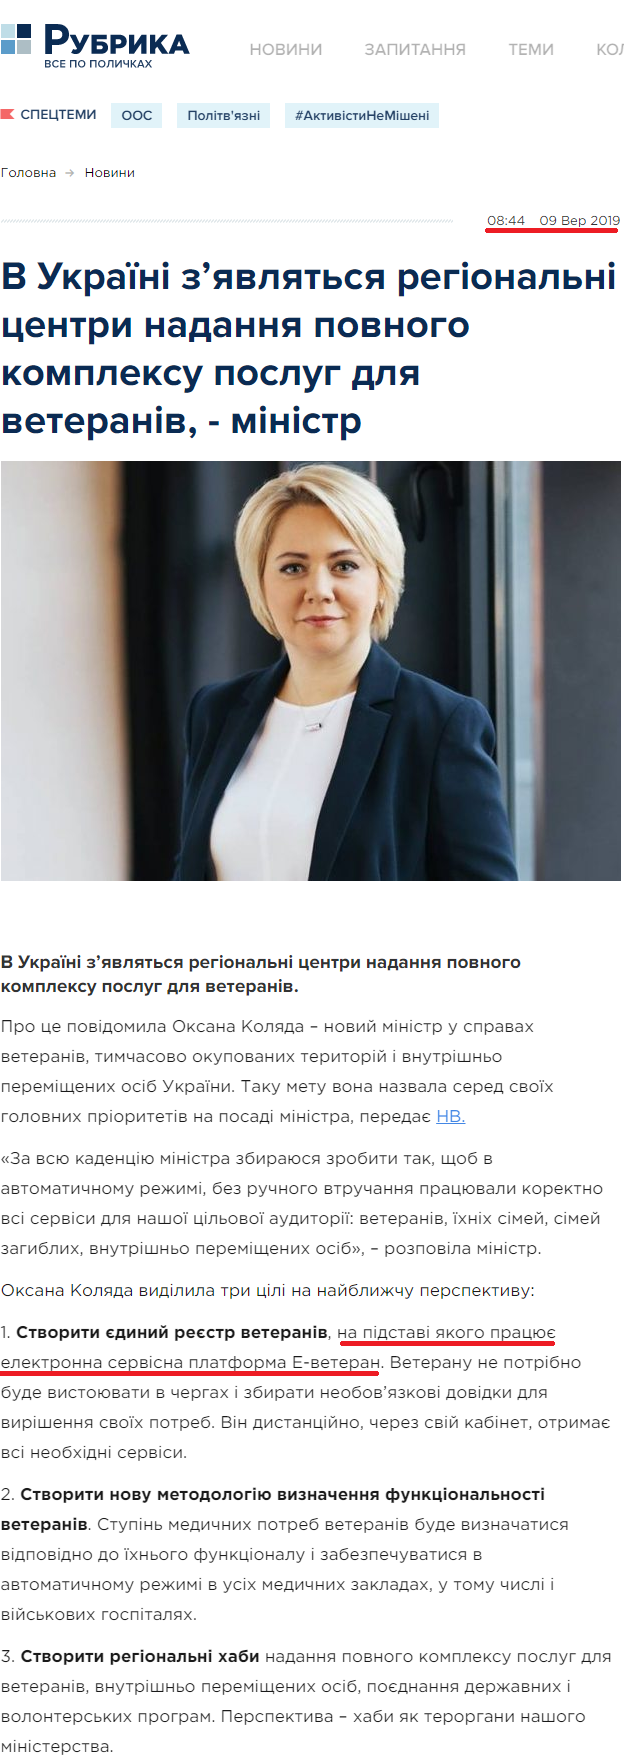 https://rubryka.com/2019/09/09/v-ukrayini-z-yavlyatsya-regionalni-tsentry-nadannya-povnogo-kompleksu-poslug-dlya-veteraniv-ministr/